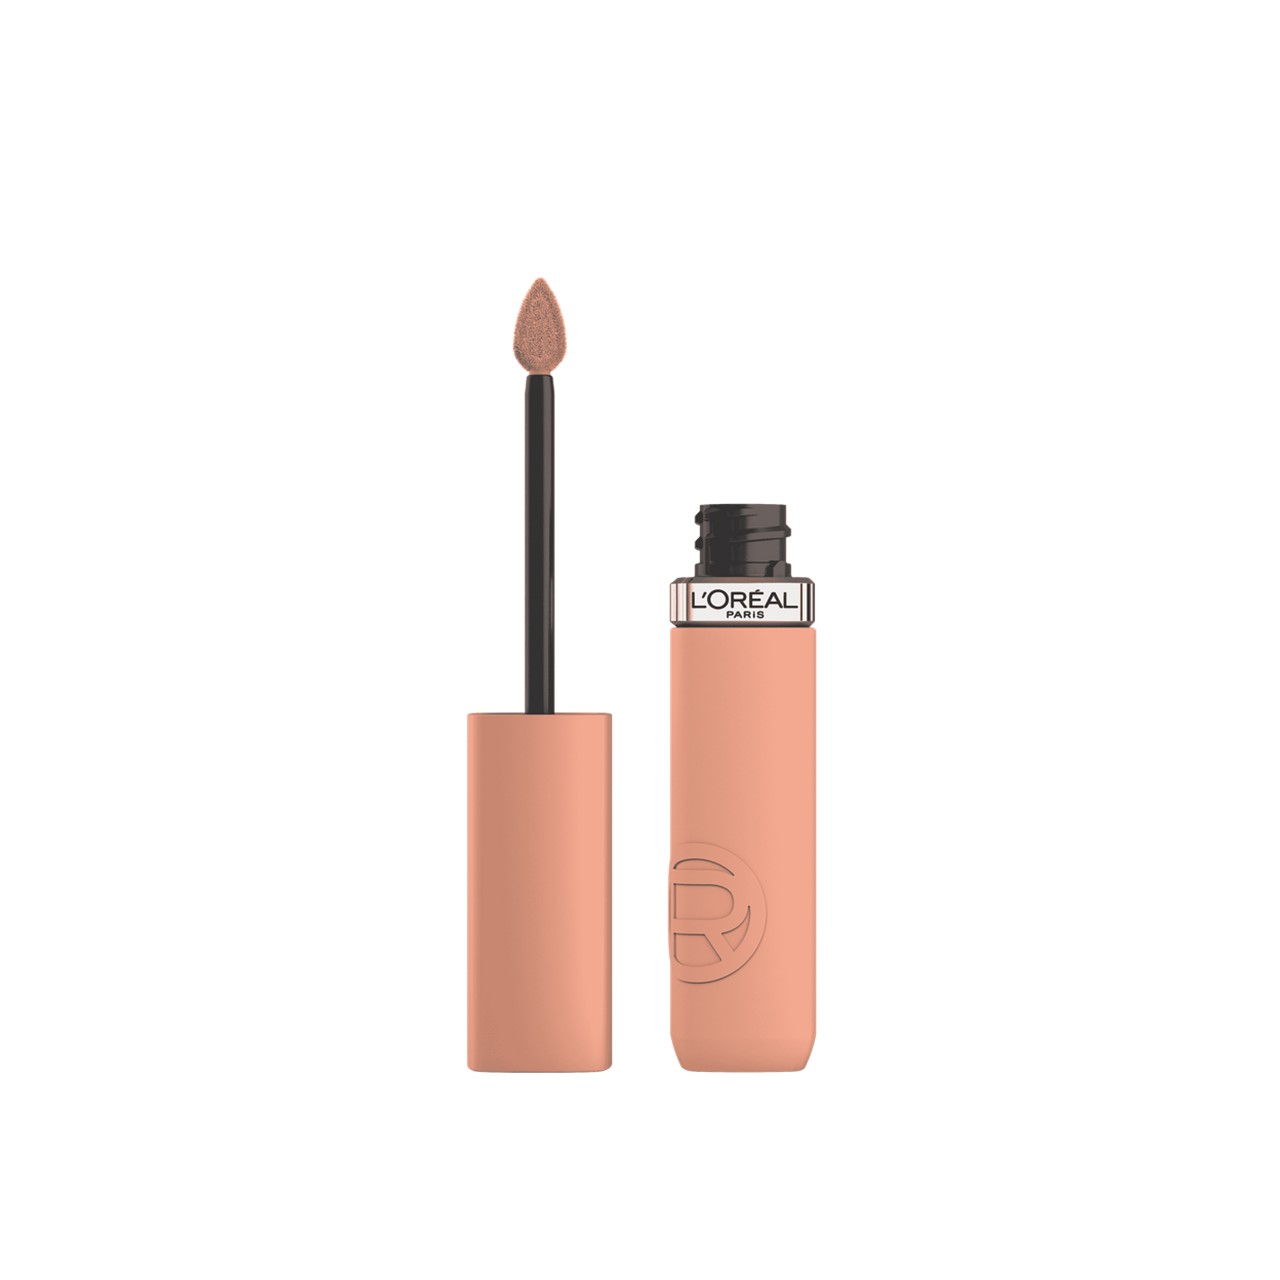 L'Oréal Paris Infallible Matte Resistance Liquid Lipstick 100 Fairytale Ending 5ml (0.17 fl oz)